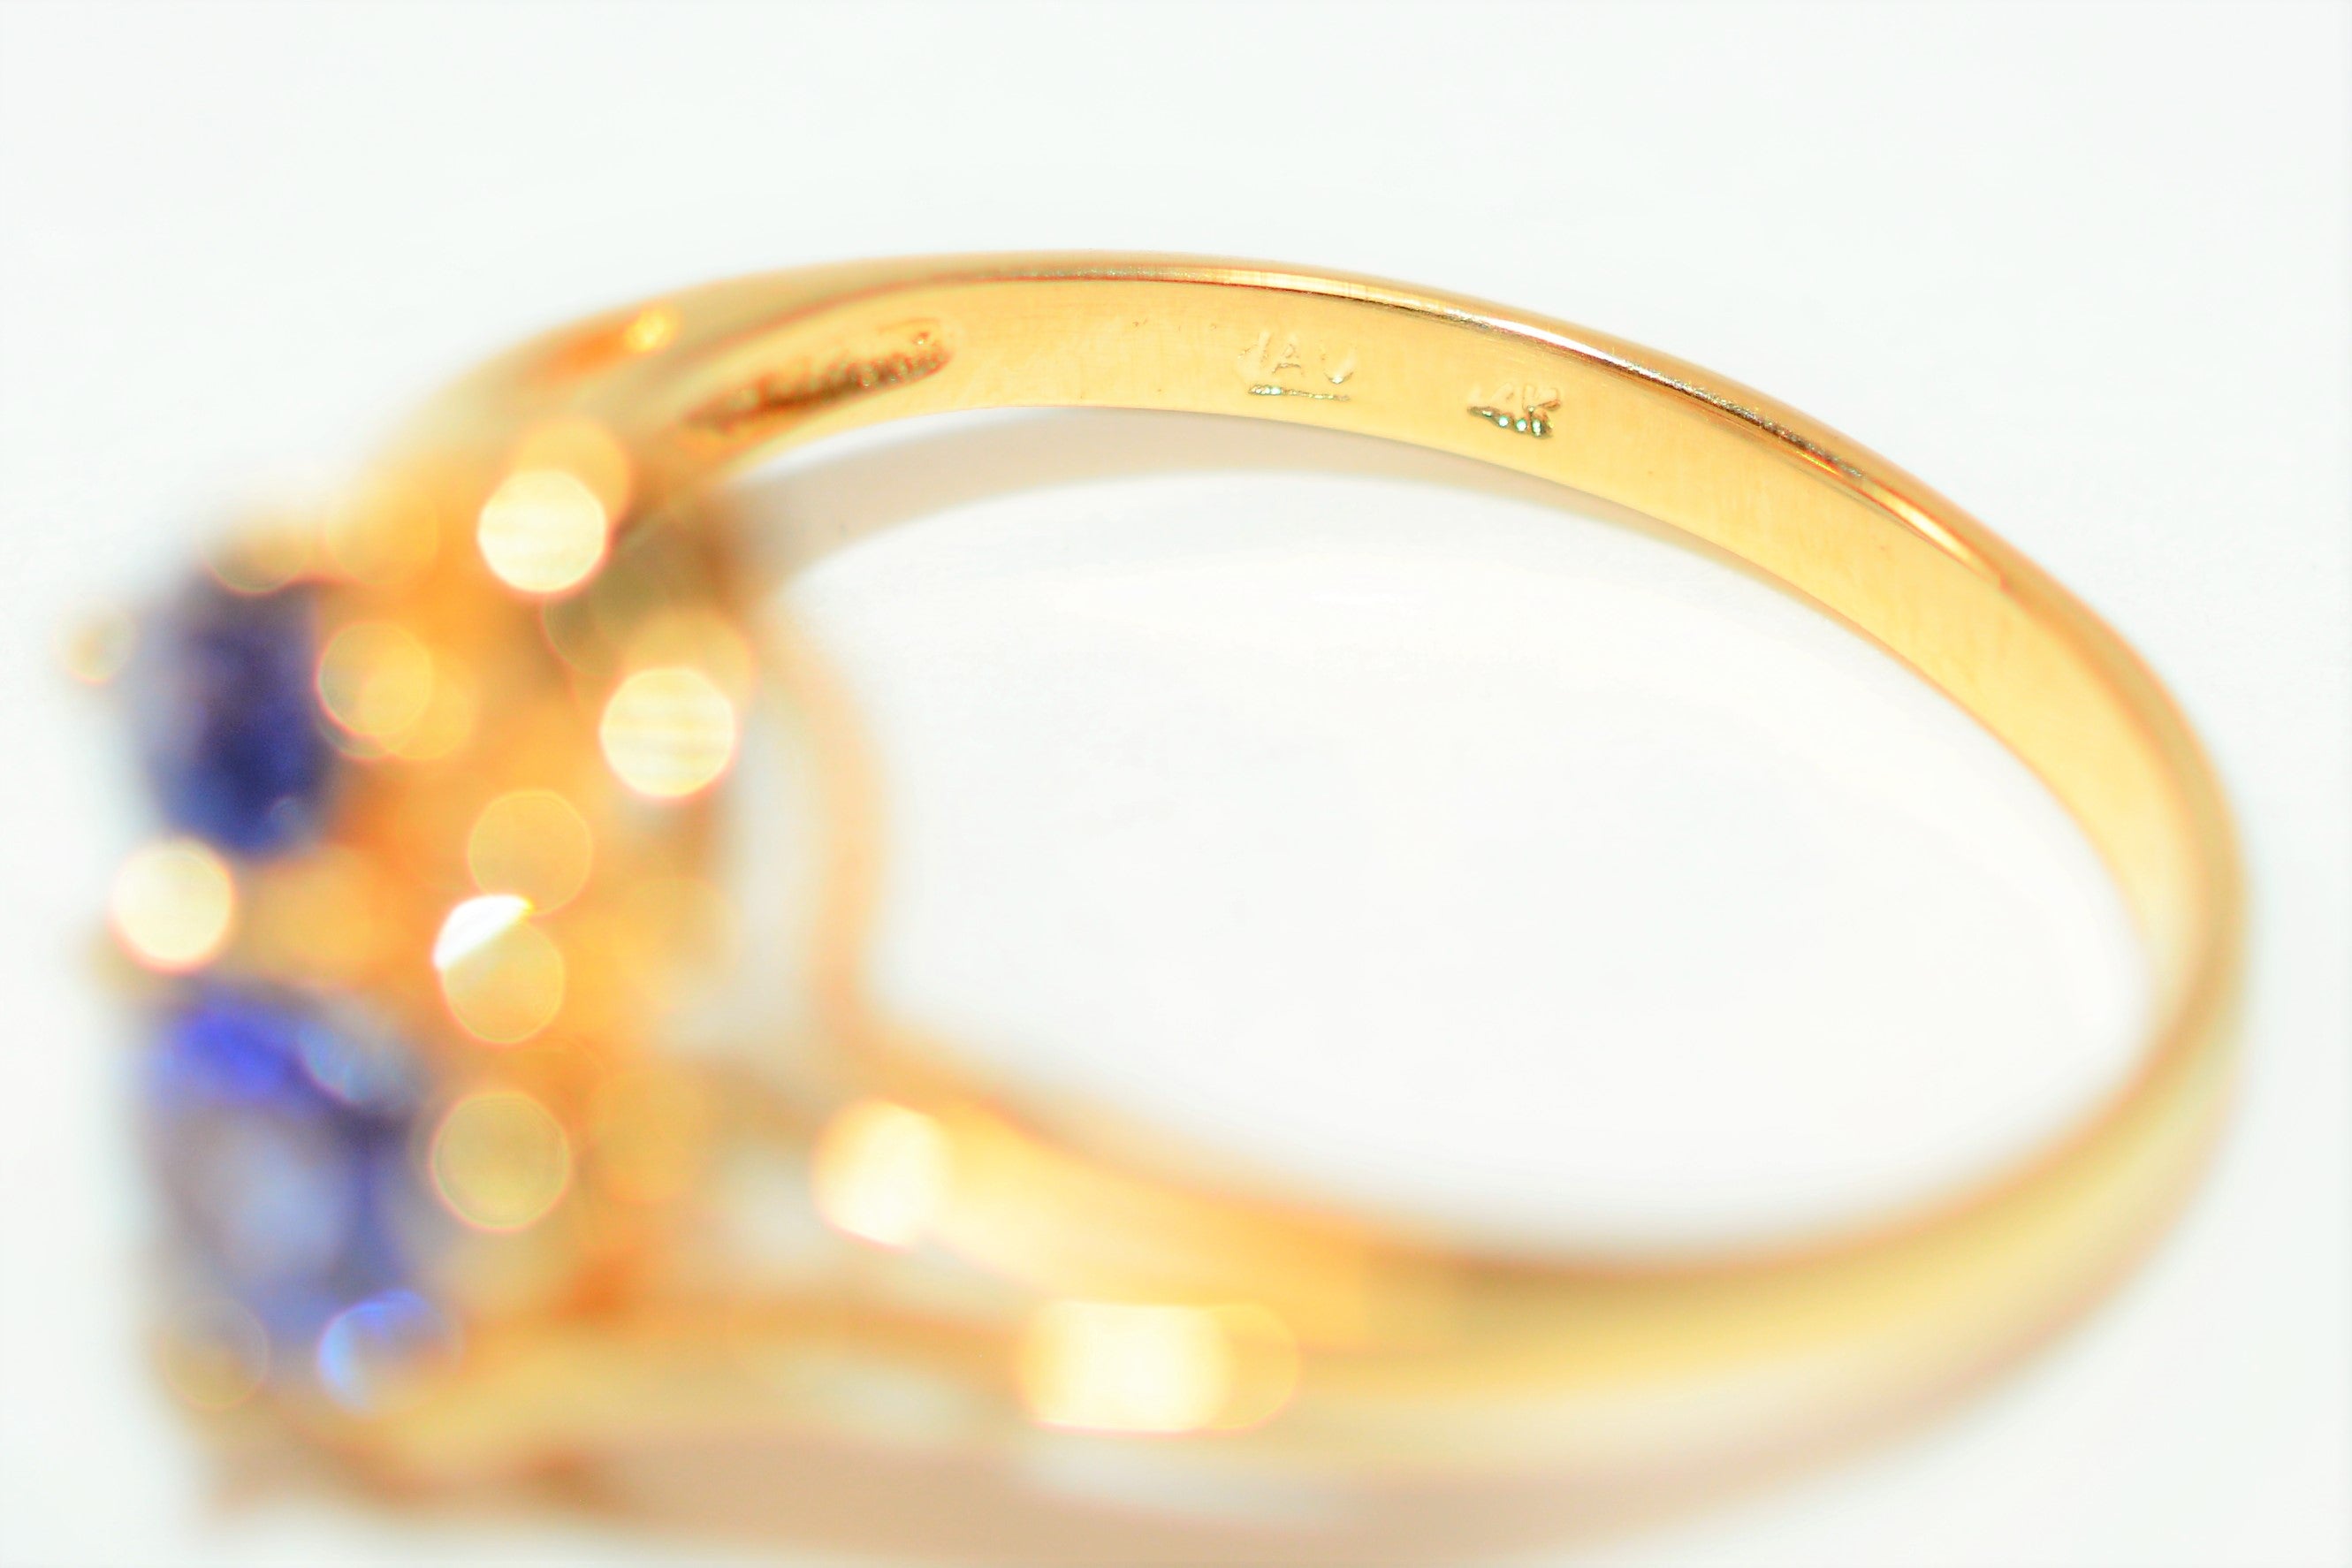 Natural Tanzanite & Diamond Ring 14K Solid Gold 1.00tcw Multi-Stone Ring Statement Ring Tanzanite Ring Ladies Ring Women's Ring Vintage Ring